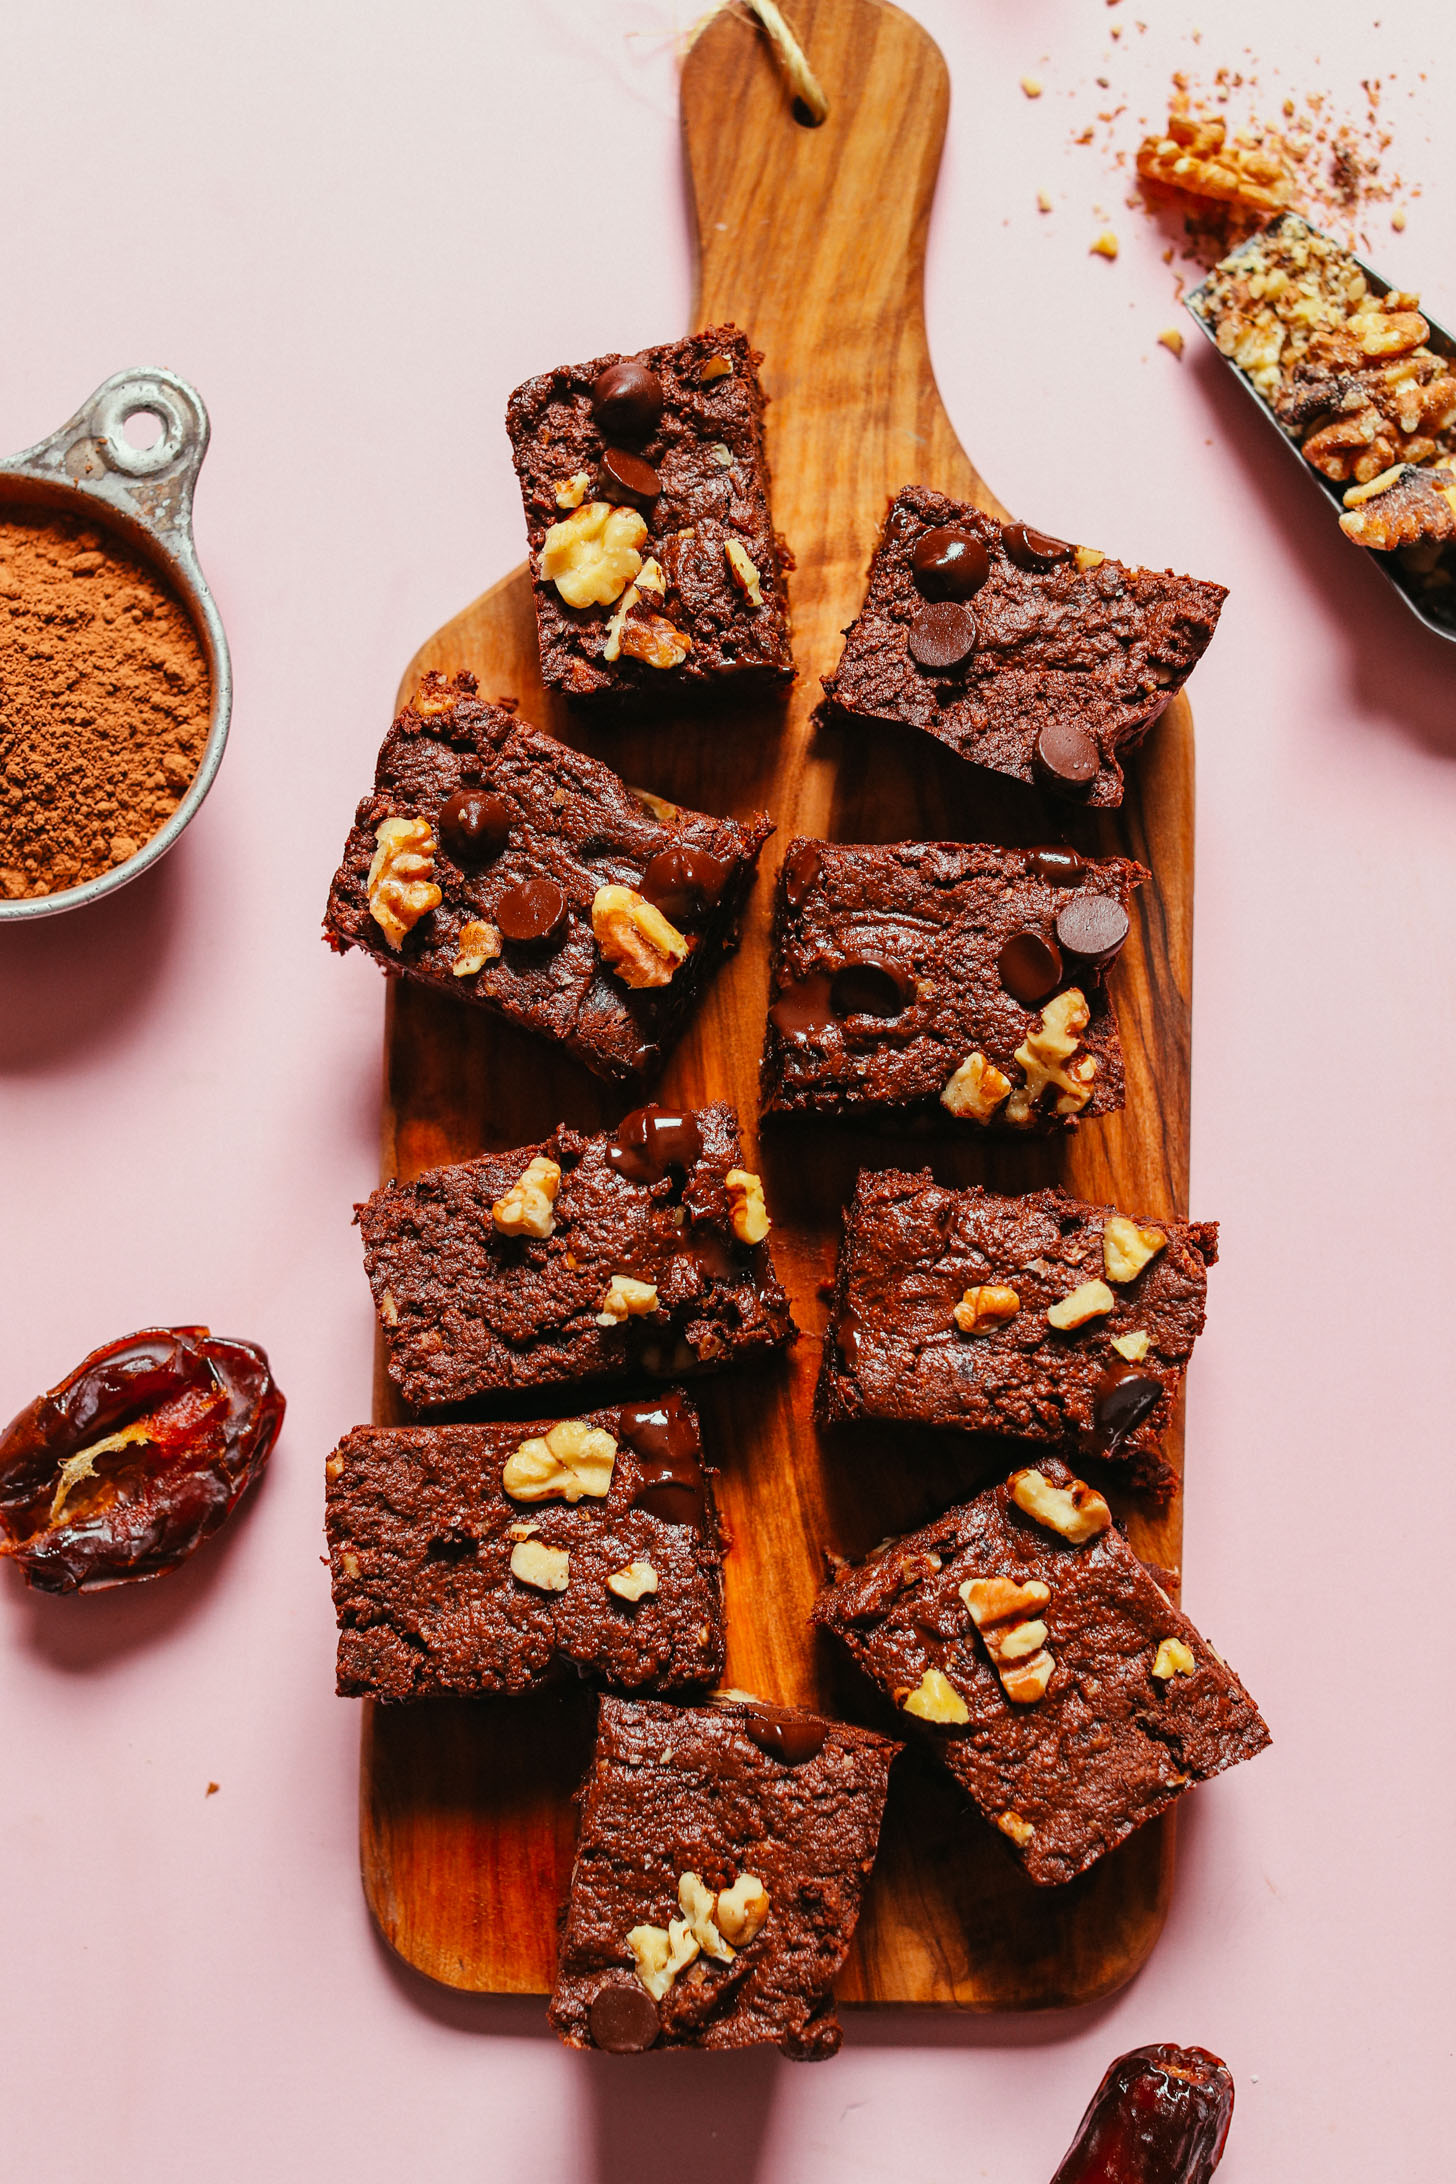 4 Ingredient Vegan Easy Brownies Minimalist Baker Recipes